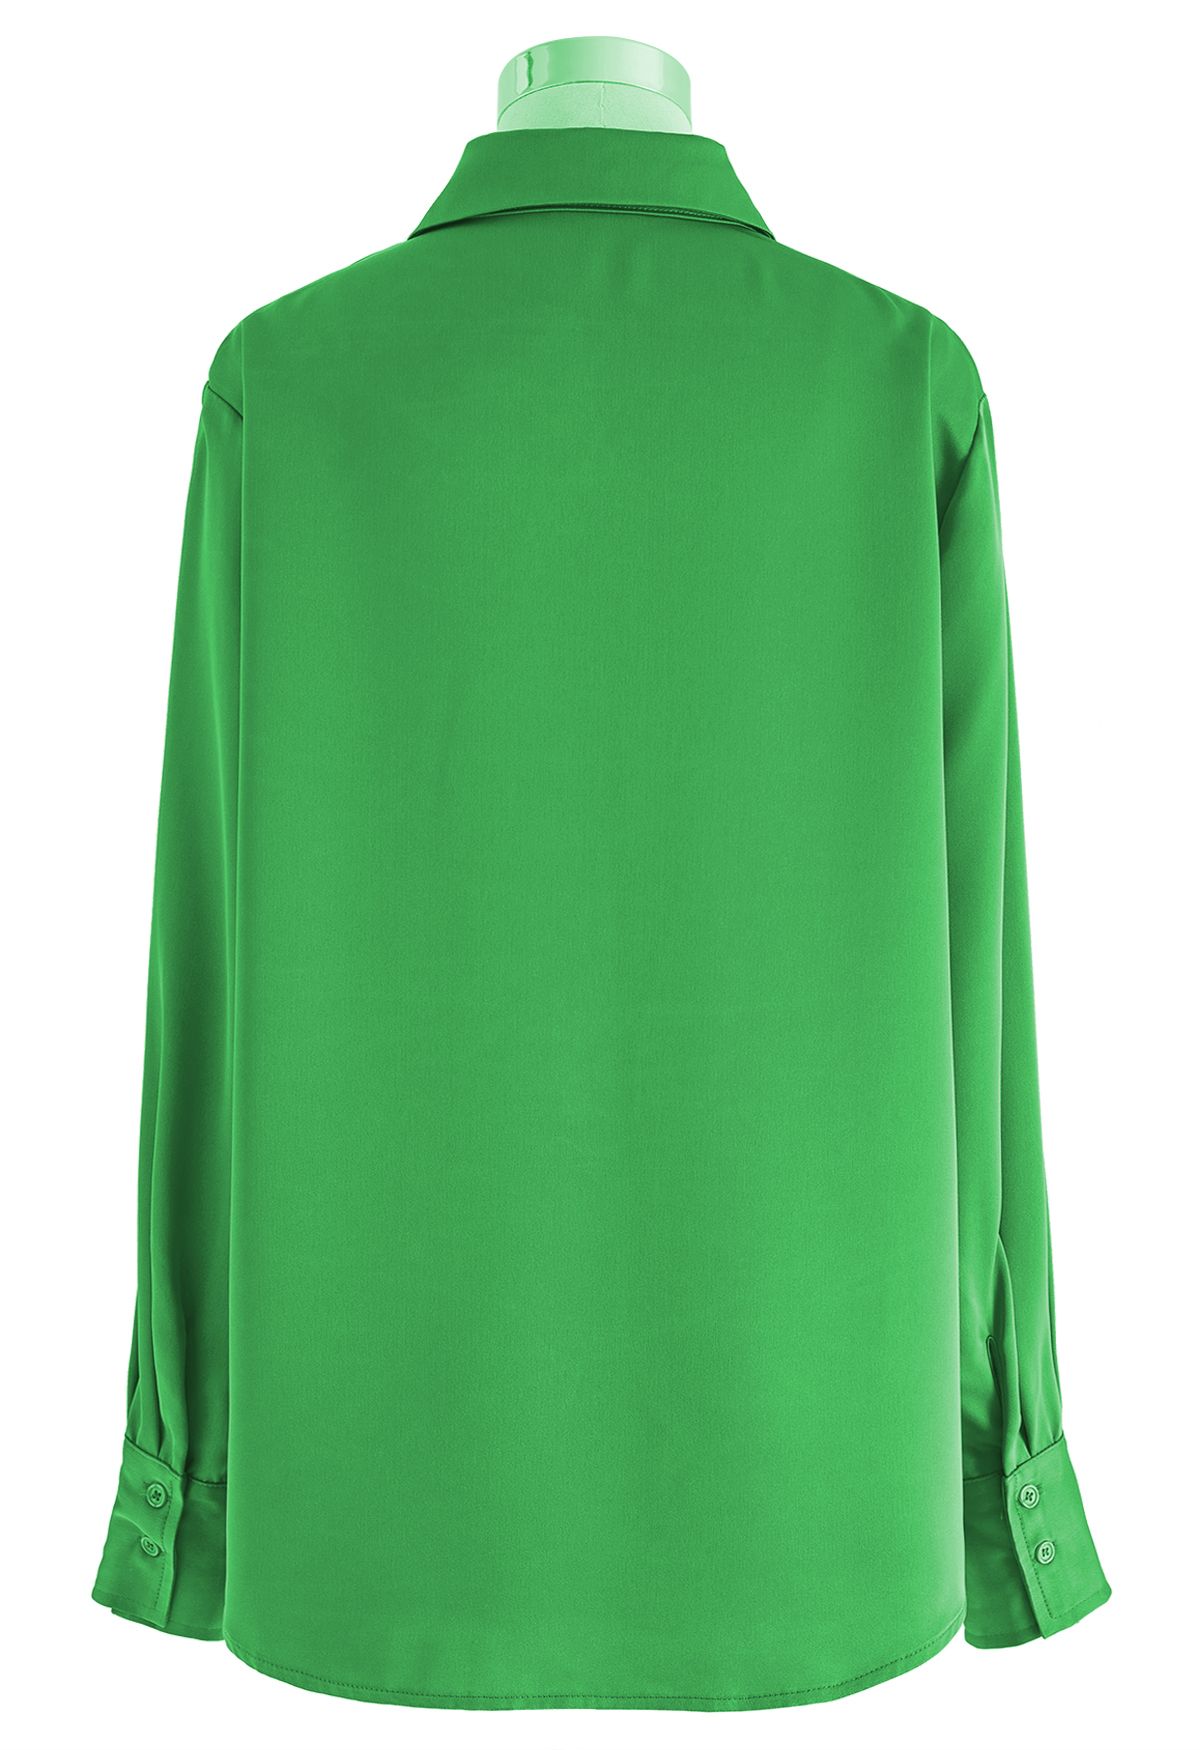 Camisa abotoada com acabamento acetinado em verde